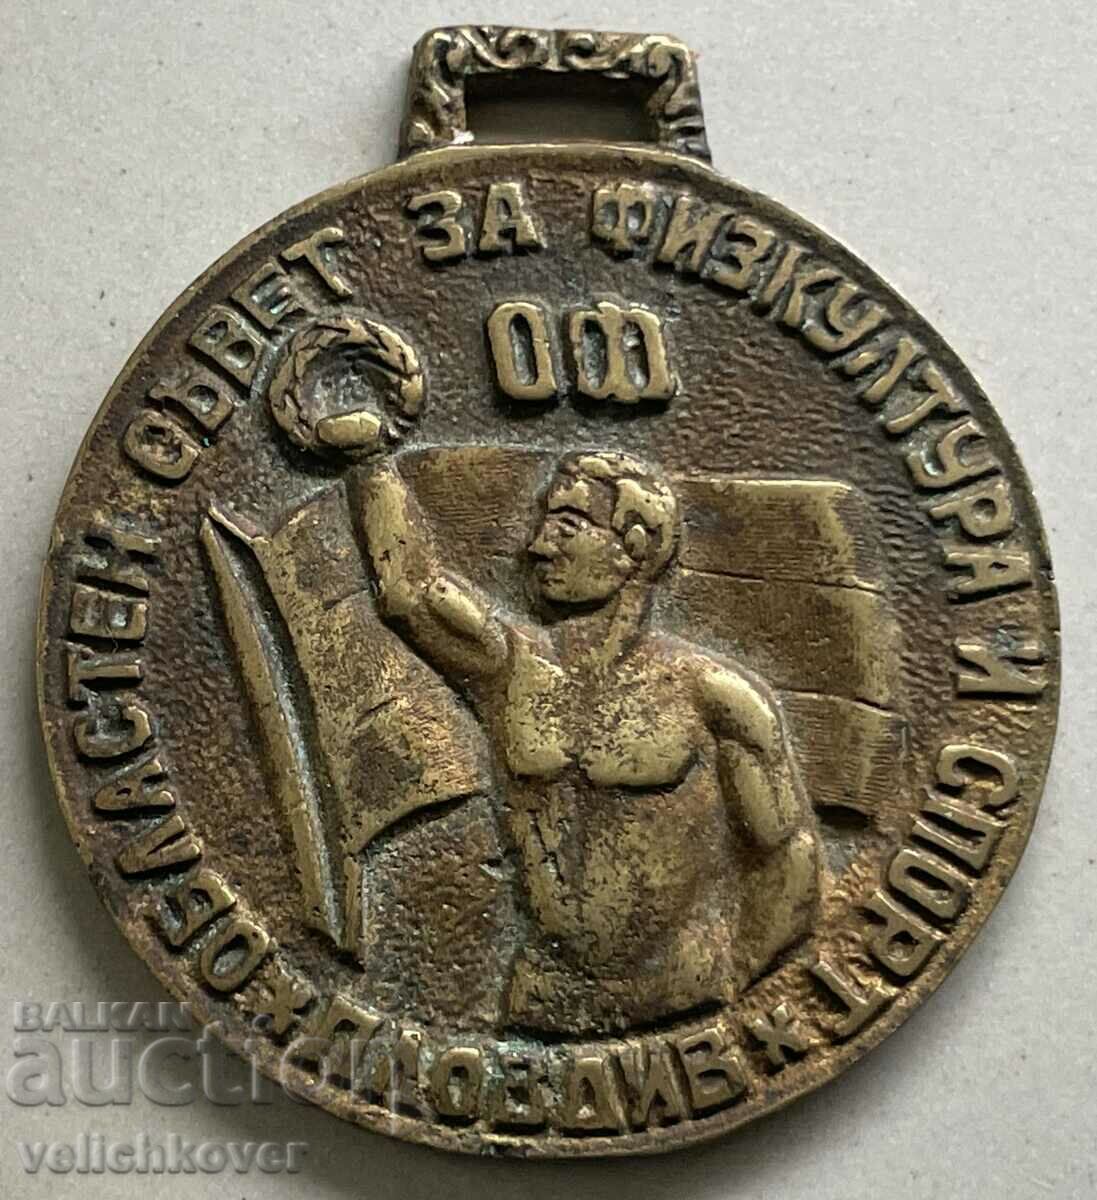 34215 Medalia de Ziua Culturii Fizice din Bulgaria 1945 AL Patriei